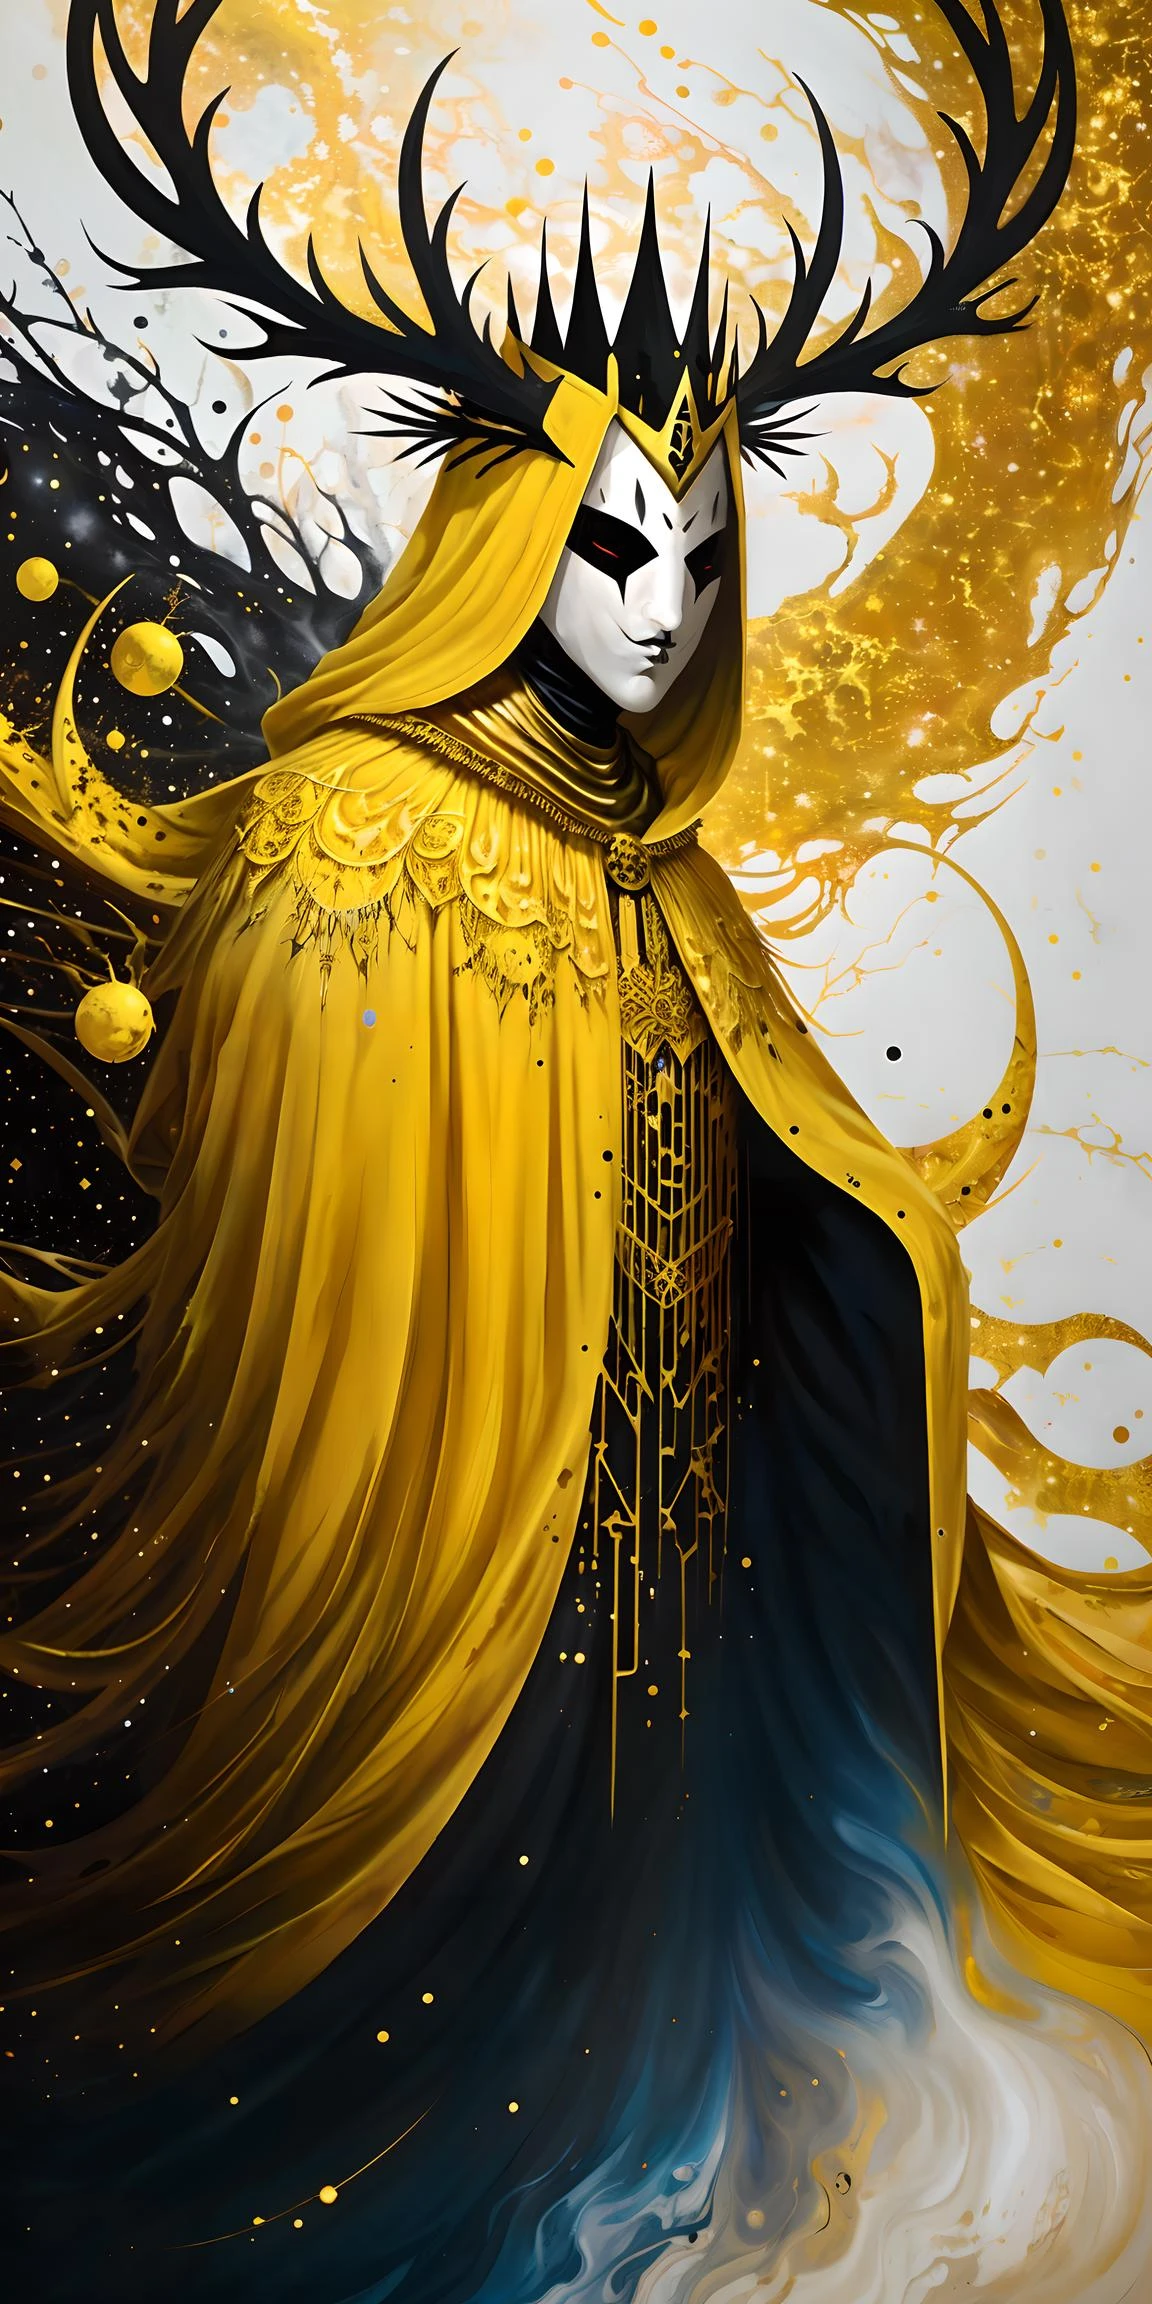 uma pintura surreal de respingos de tinta do rei amarelo usando uma capa e uma máscara, chifres, coroa, fundo cósmico, esquema de cores ouro e branco e preto, (abstrato:1.2) 